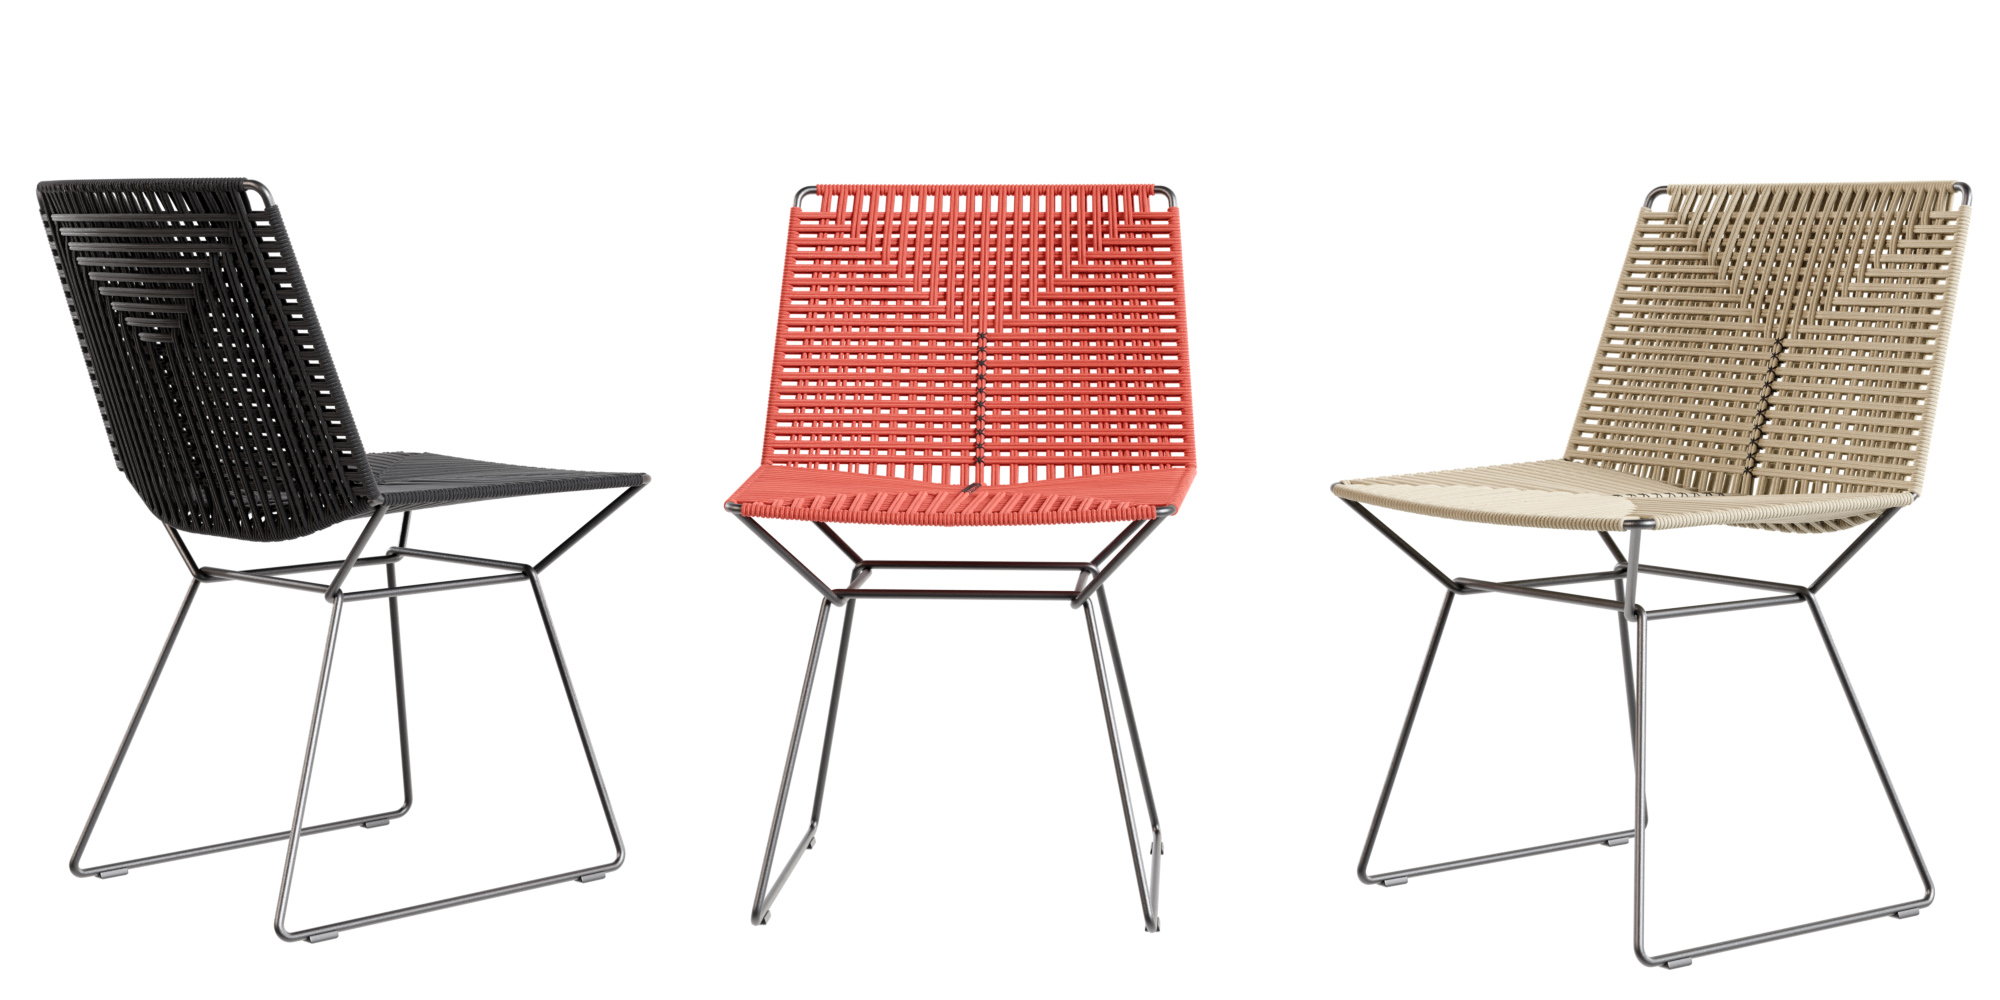 Neil Twist Versatile Chair for Indoor/Outdoor Use